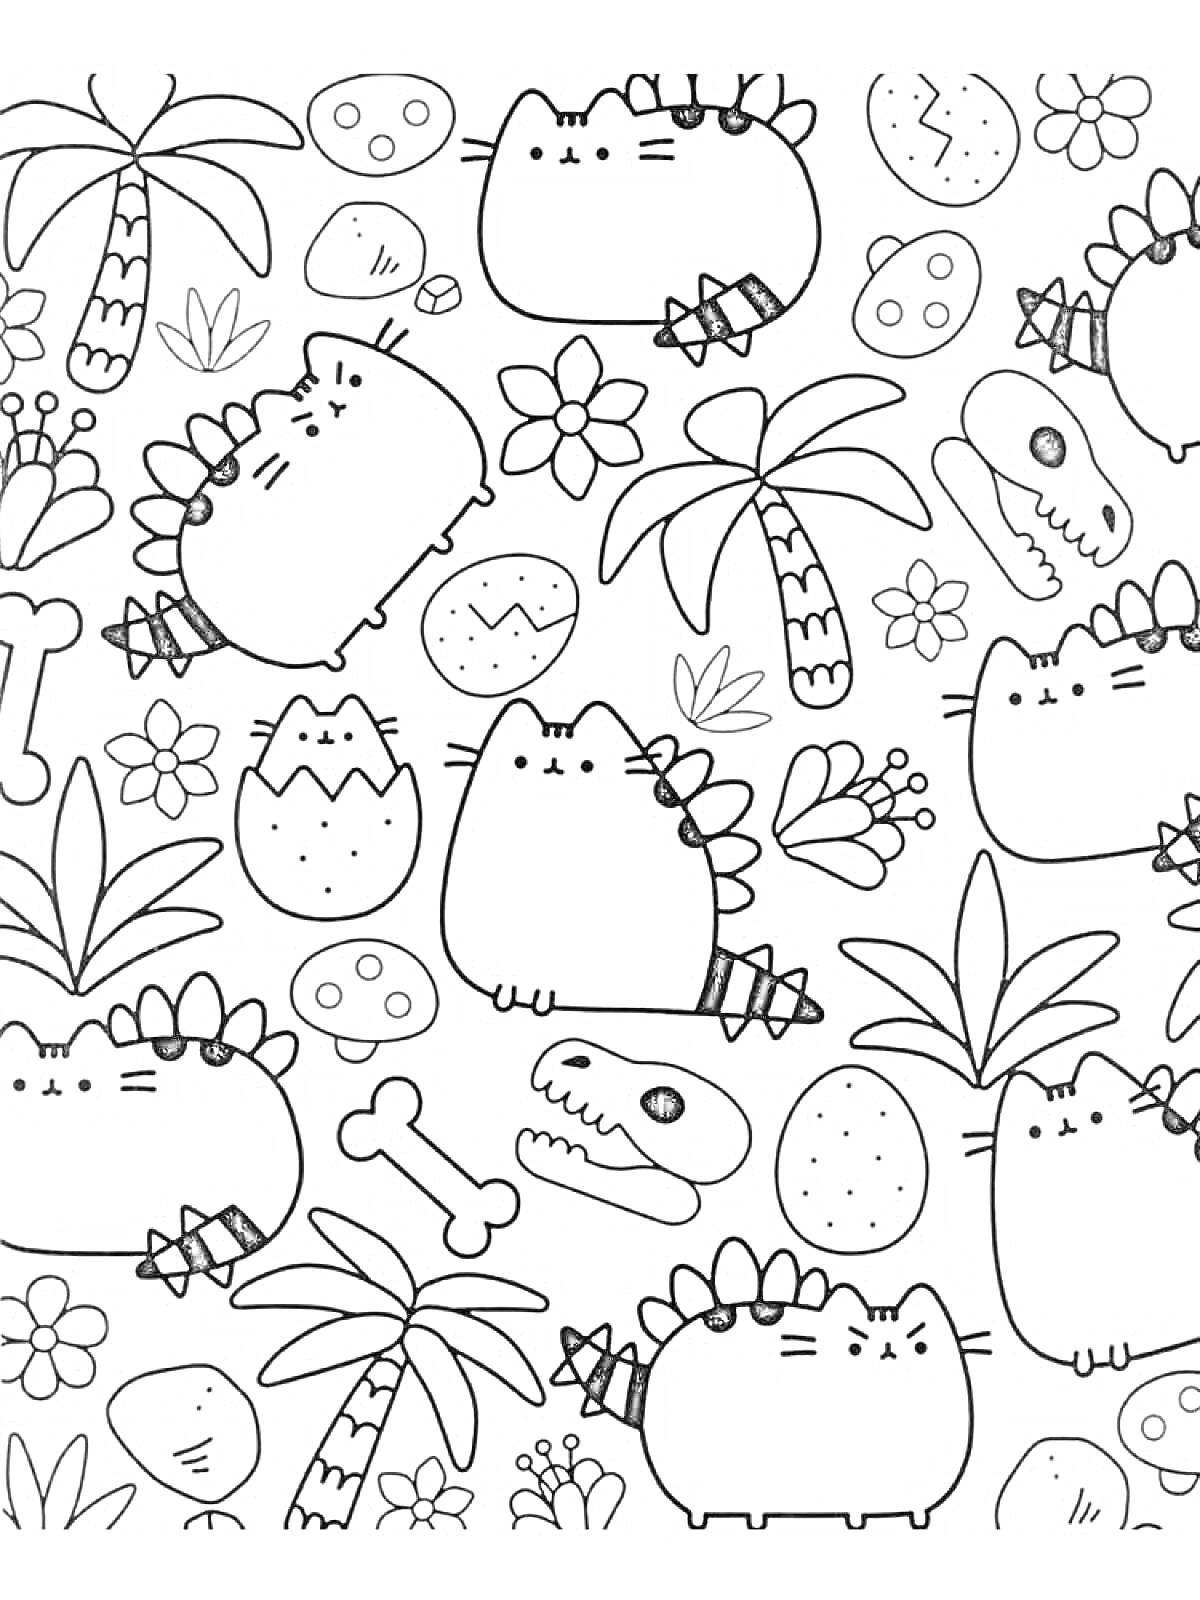 Раскраска Кот Пушин в стиле динозавра среди цветков, пальм и костей